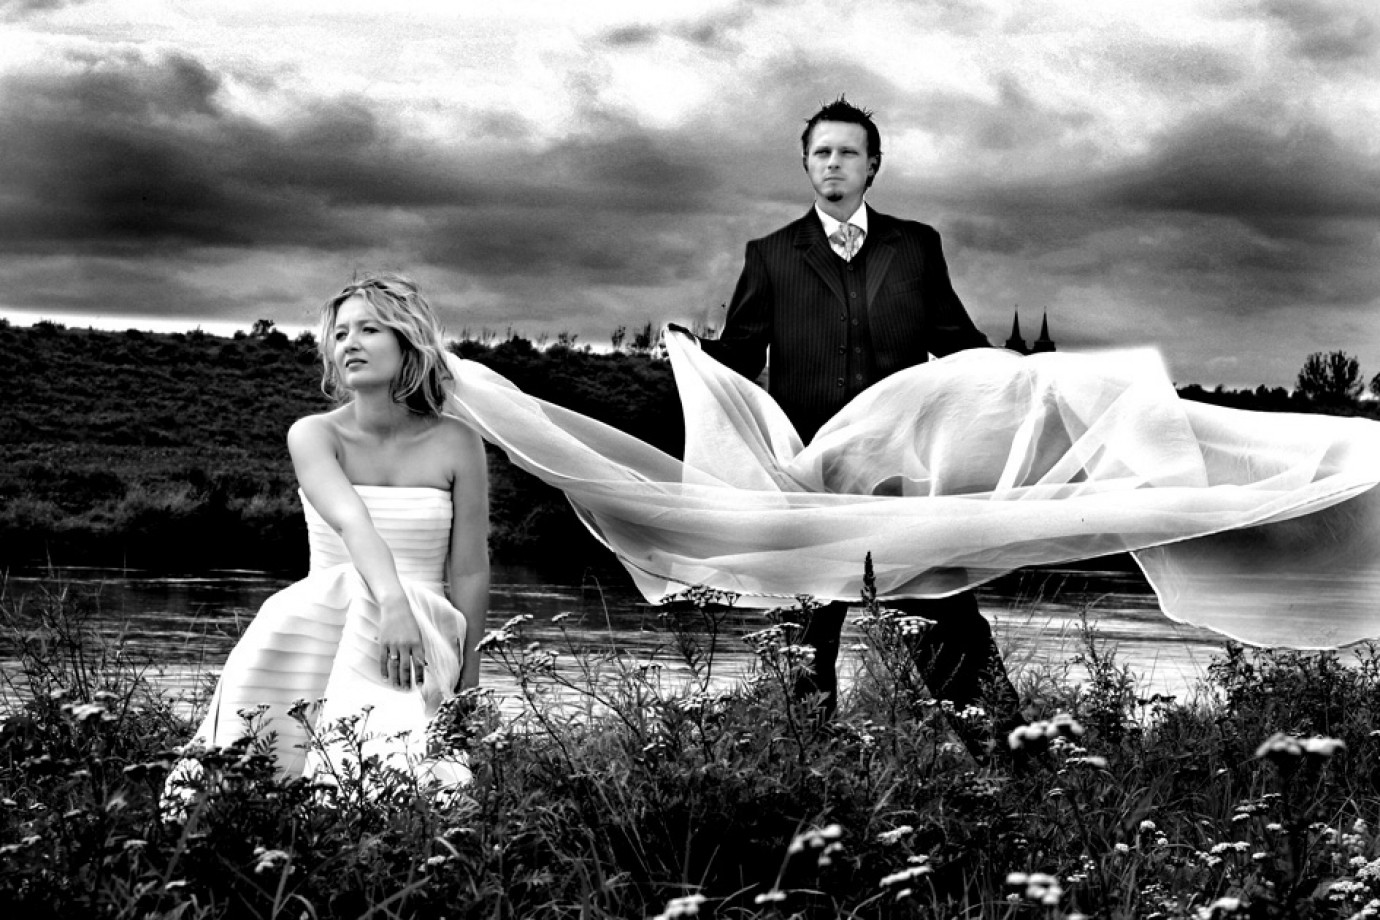 zdjęcia opole fotograf fotoszopart portfolio zdjecia slubne inspiracje wesele plener slubny sesja slubna